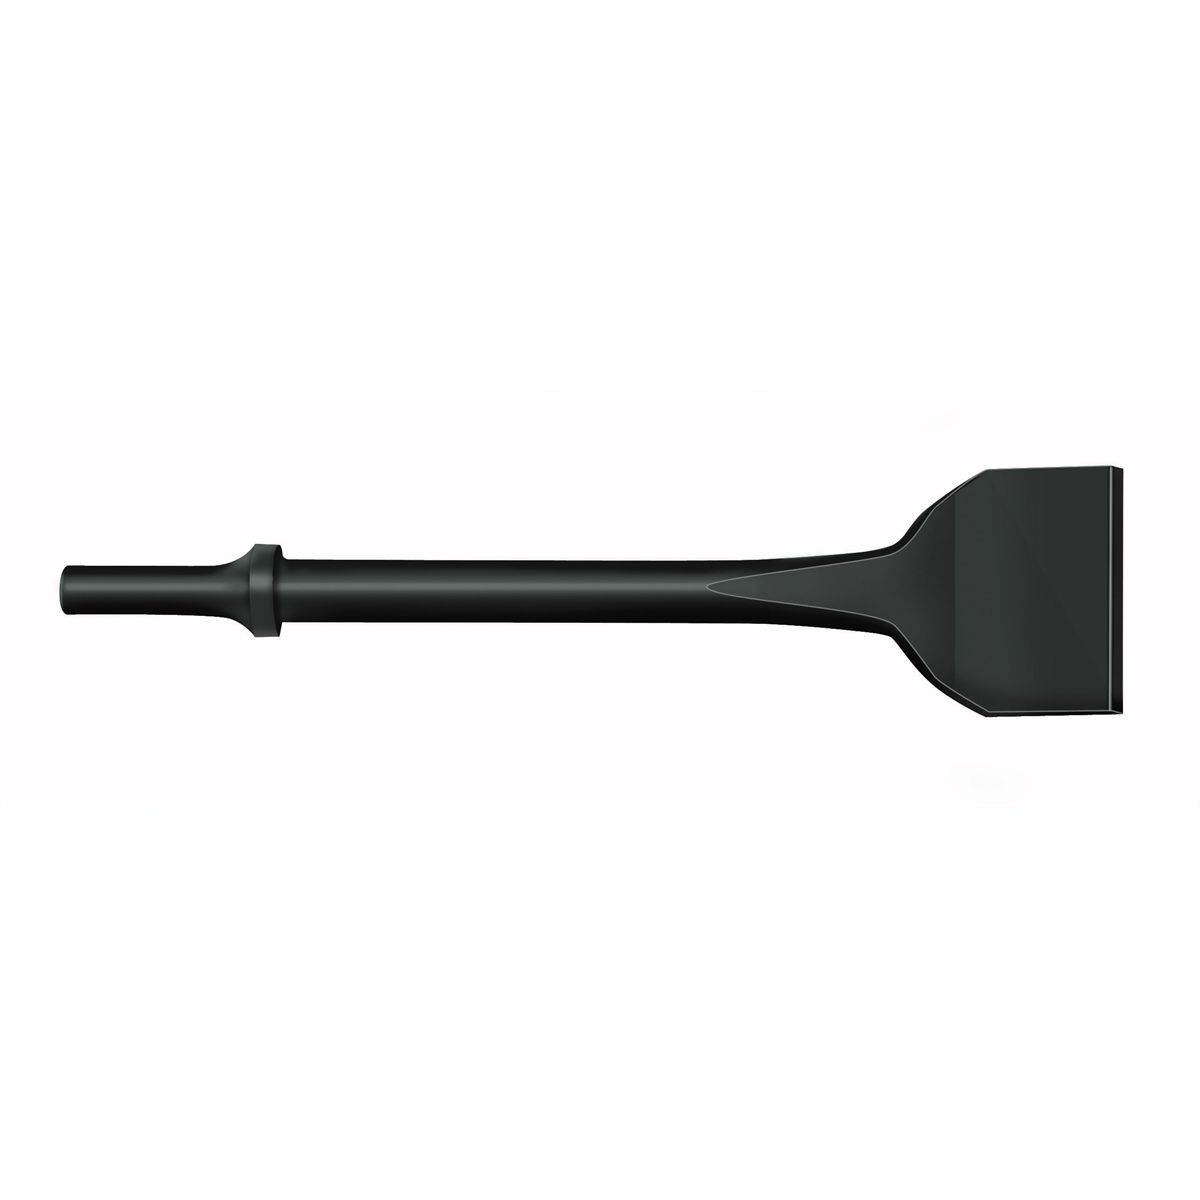 Lisle Tool 81210 3/4" Plastic Air/ Electric Hammer Chisel Scraper 